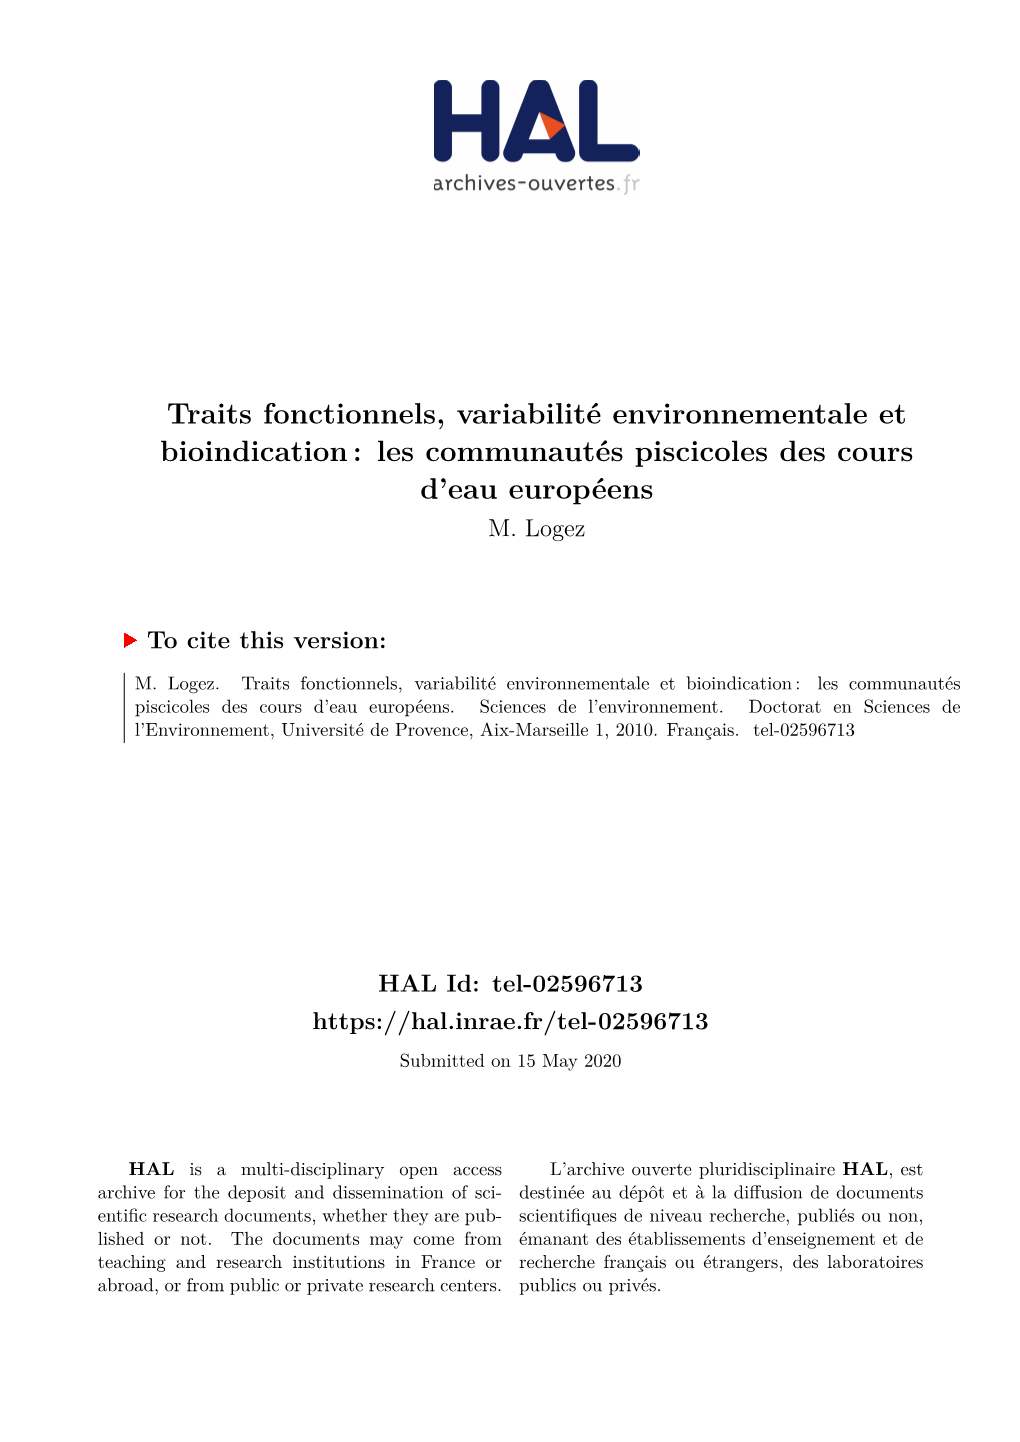 Traits Fonctionnels, Variabilité Environnementale Et Bioindication : Les Communautés Piscicoles Des Cours D’Eau Européens M